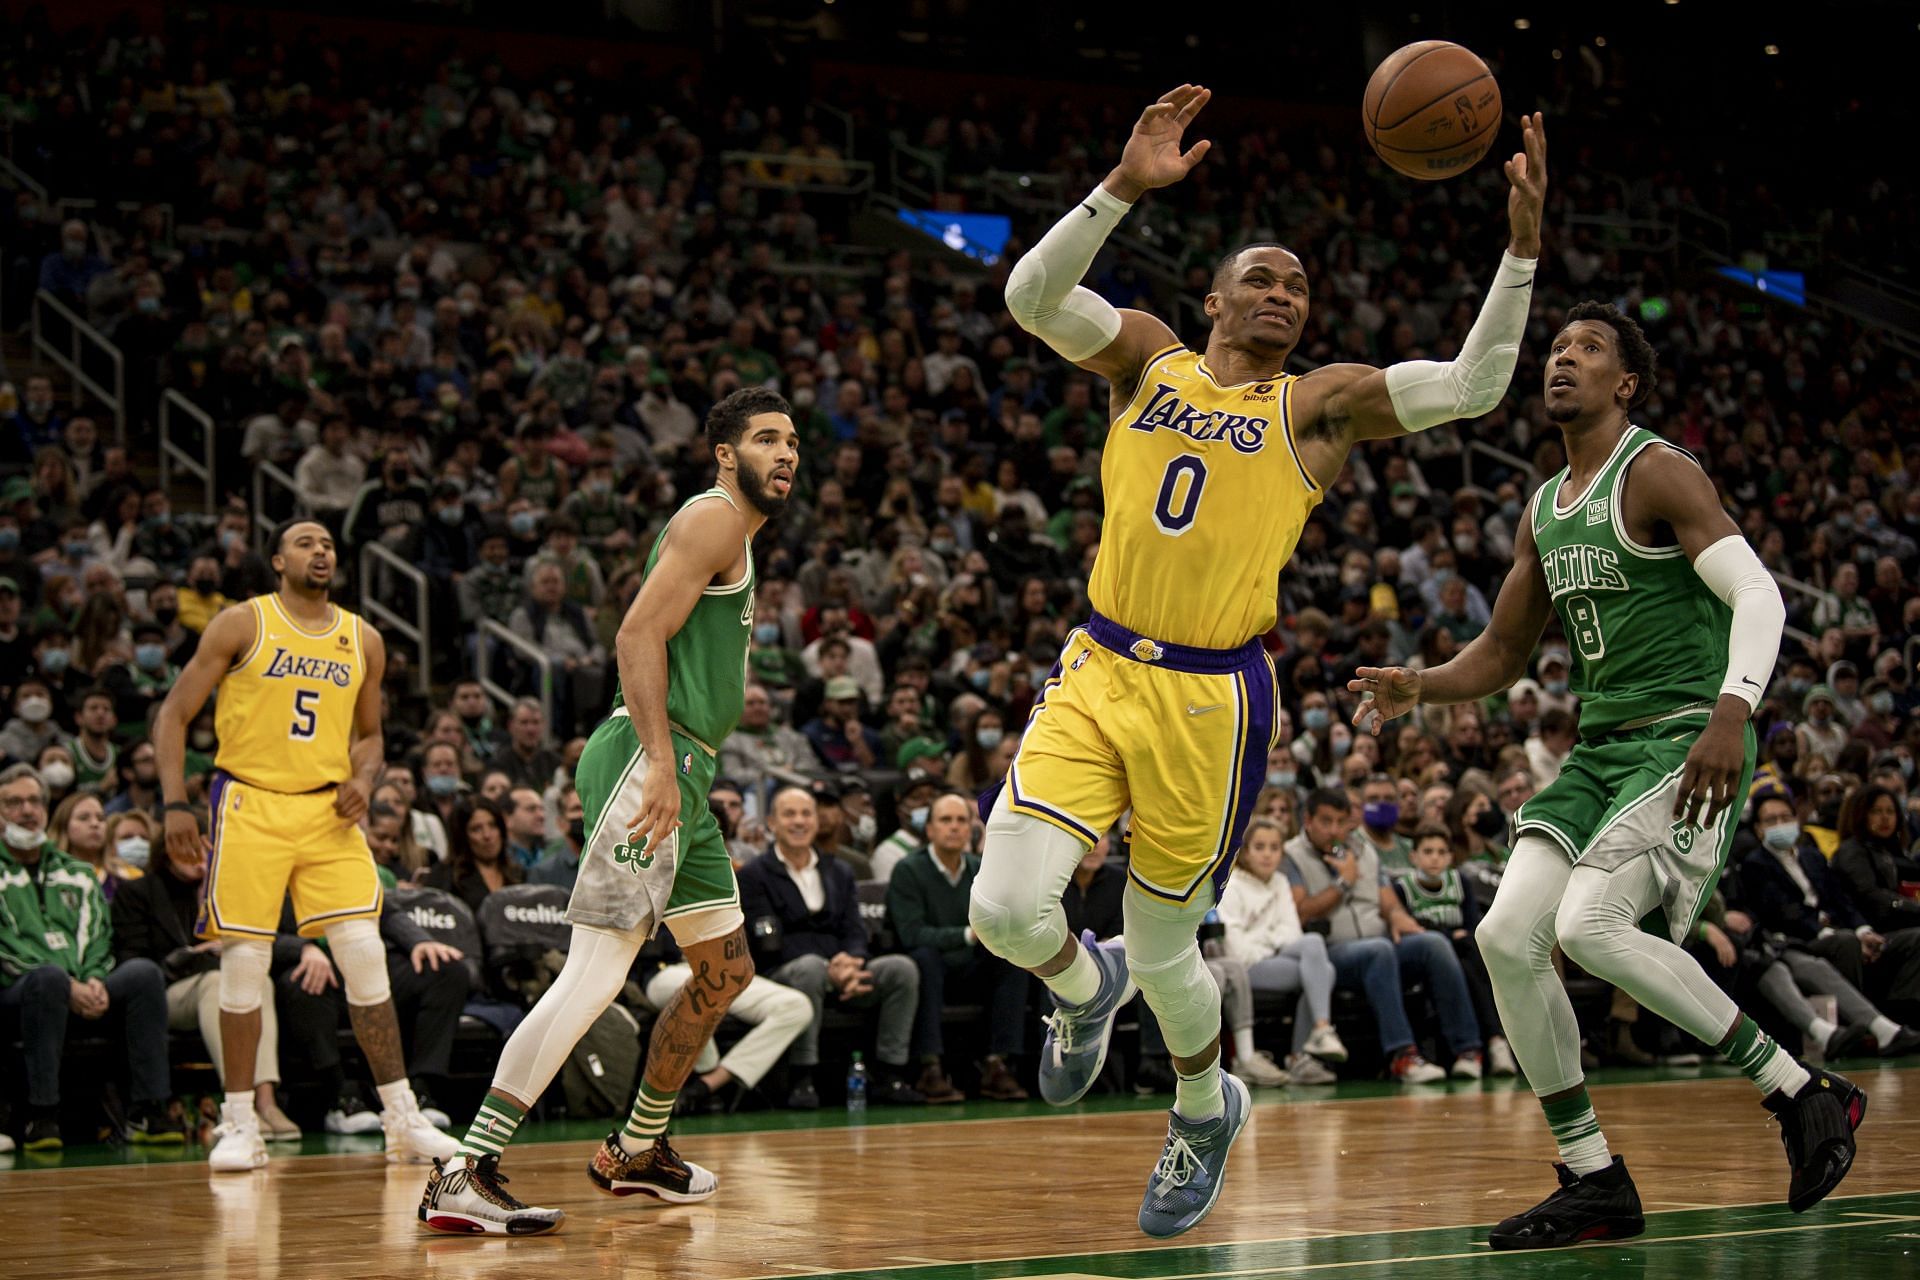 The LA Lakers defense had no answer for the Boston Celtics